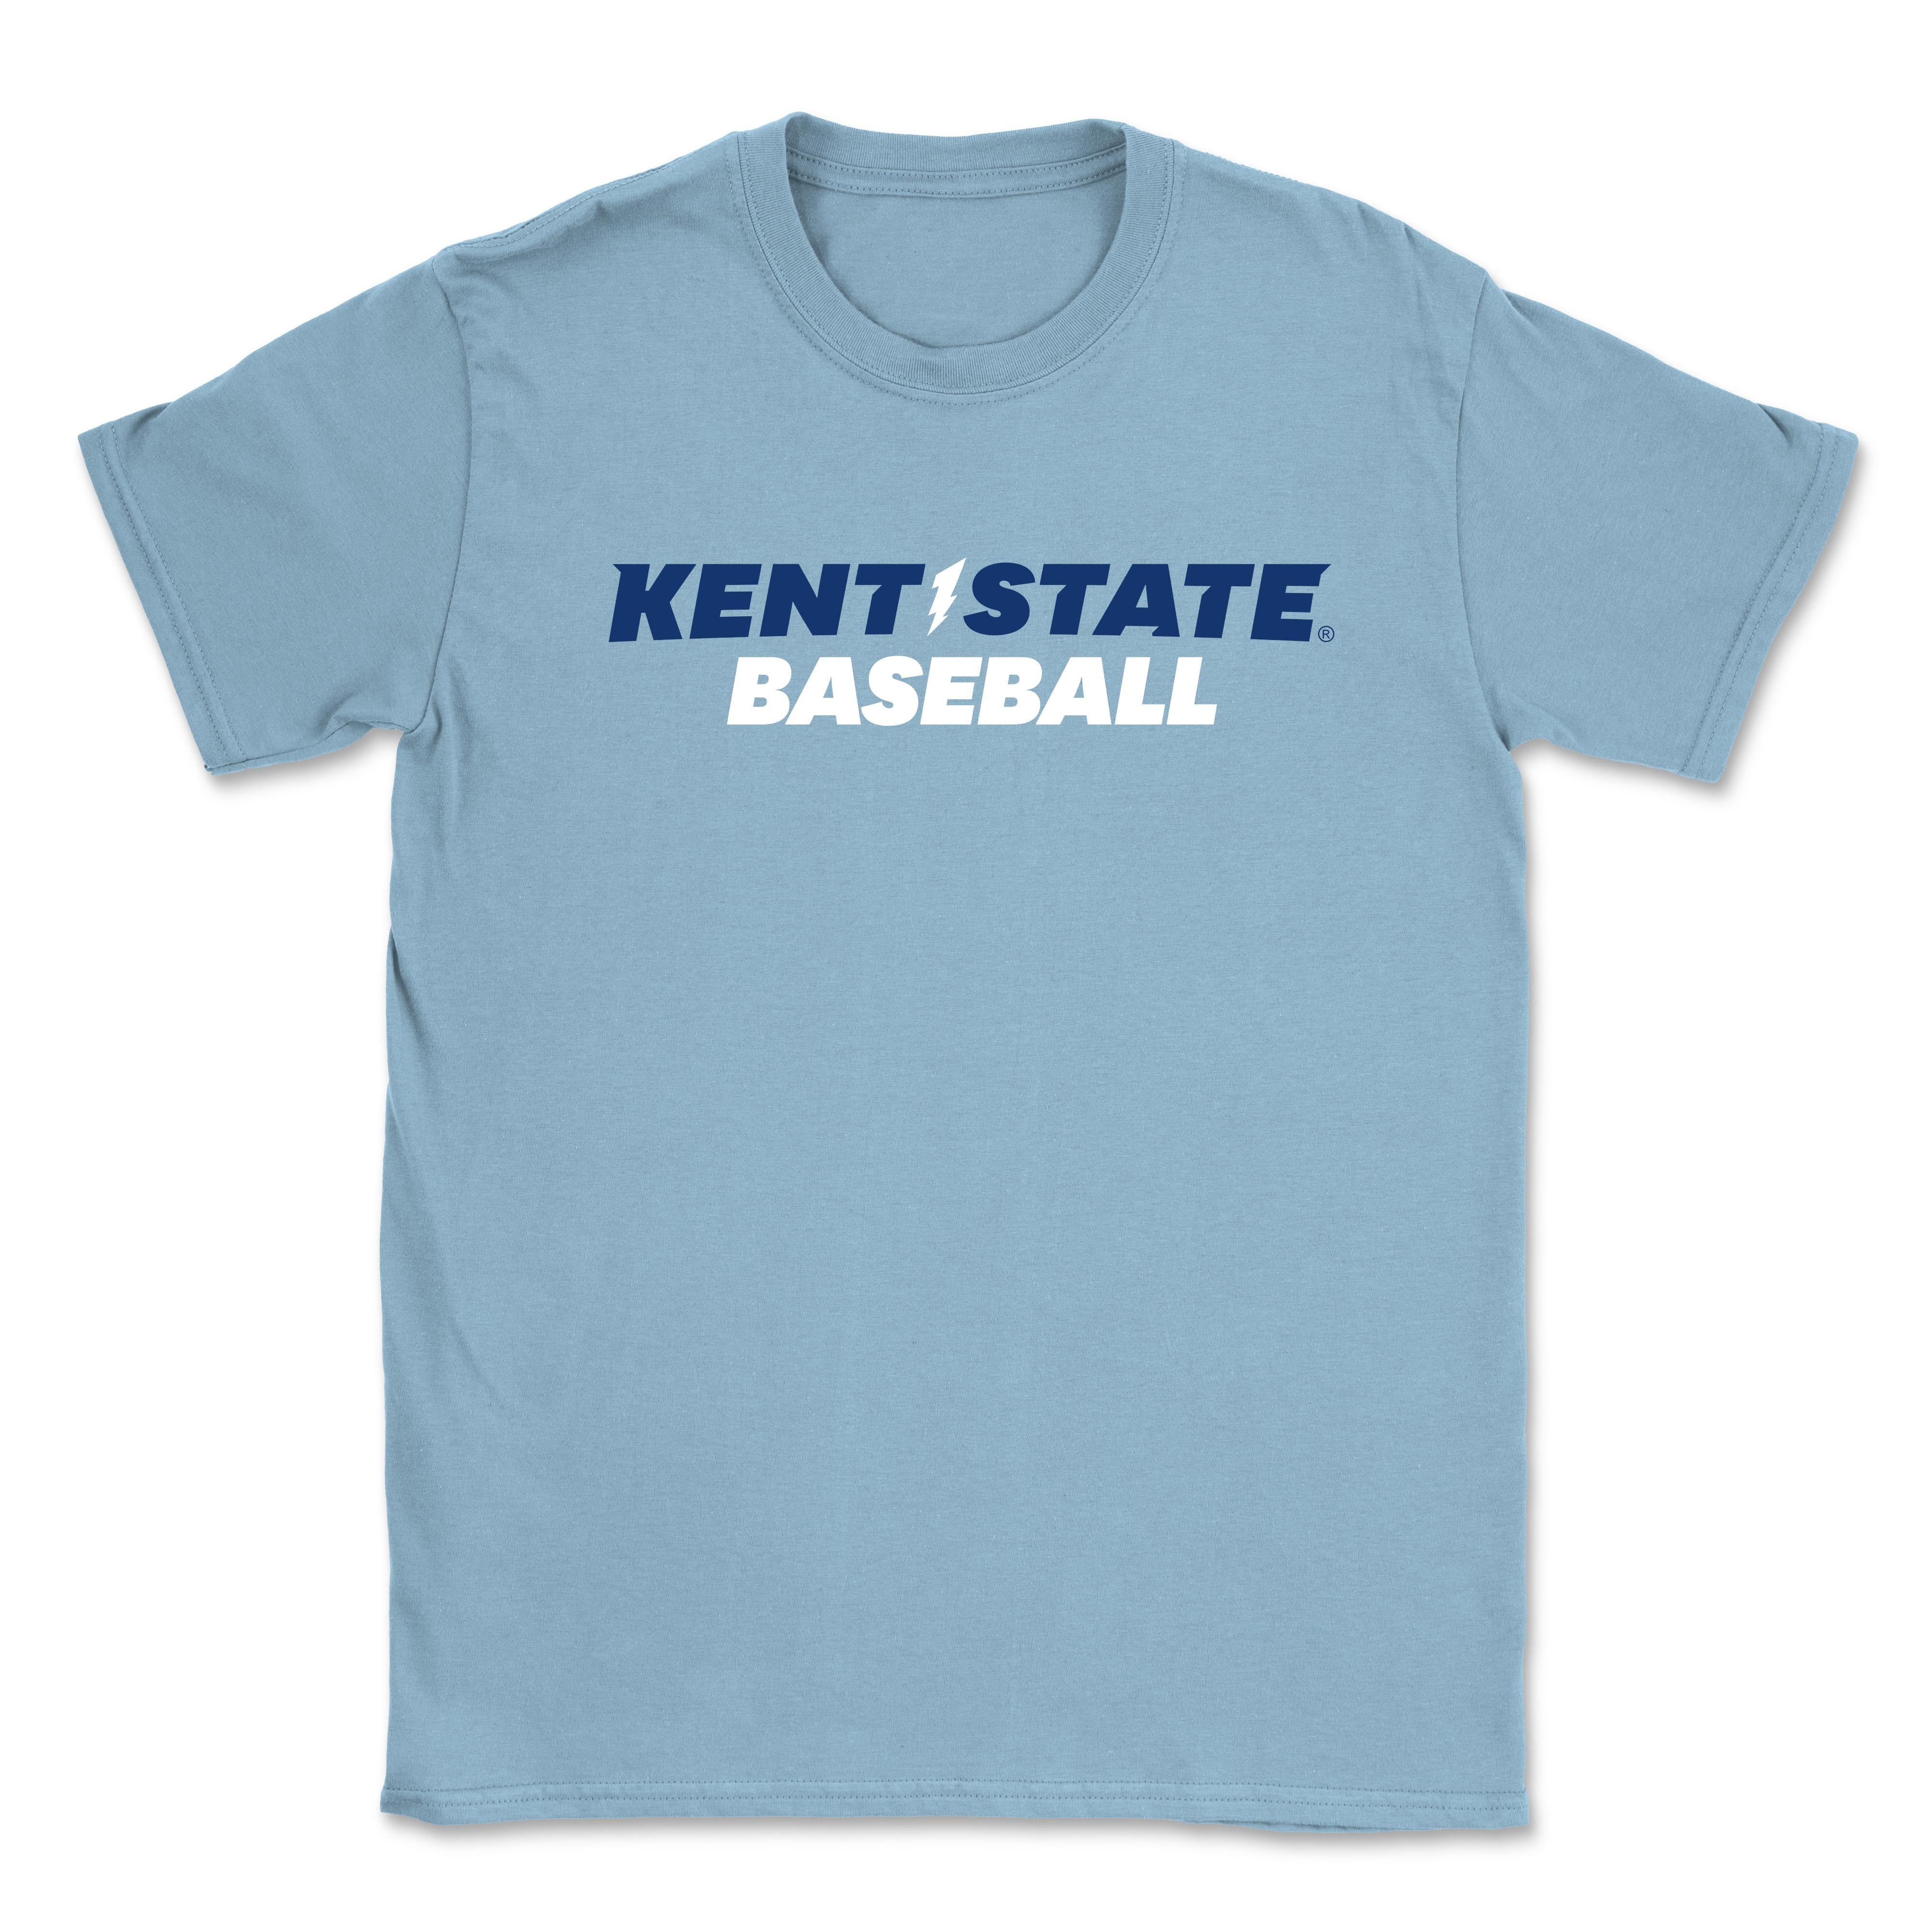 Kent State Light Blue Basetball T-Shirt